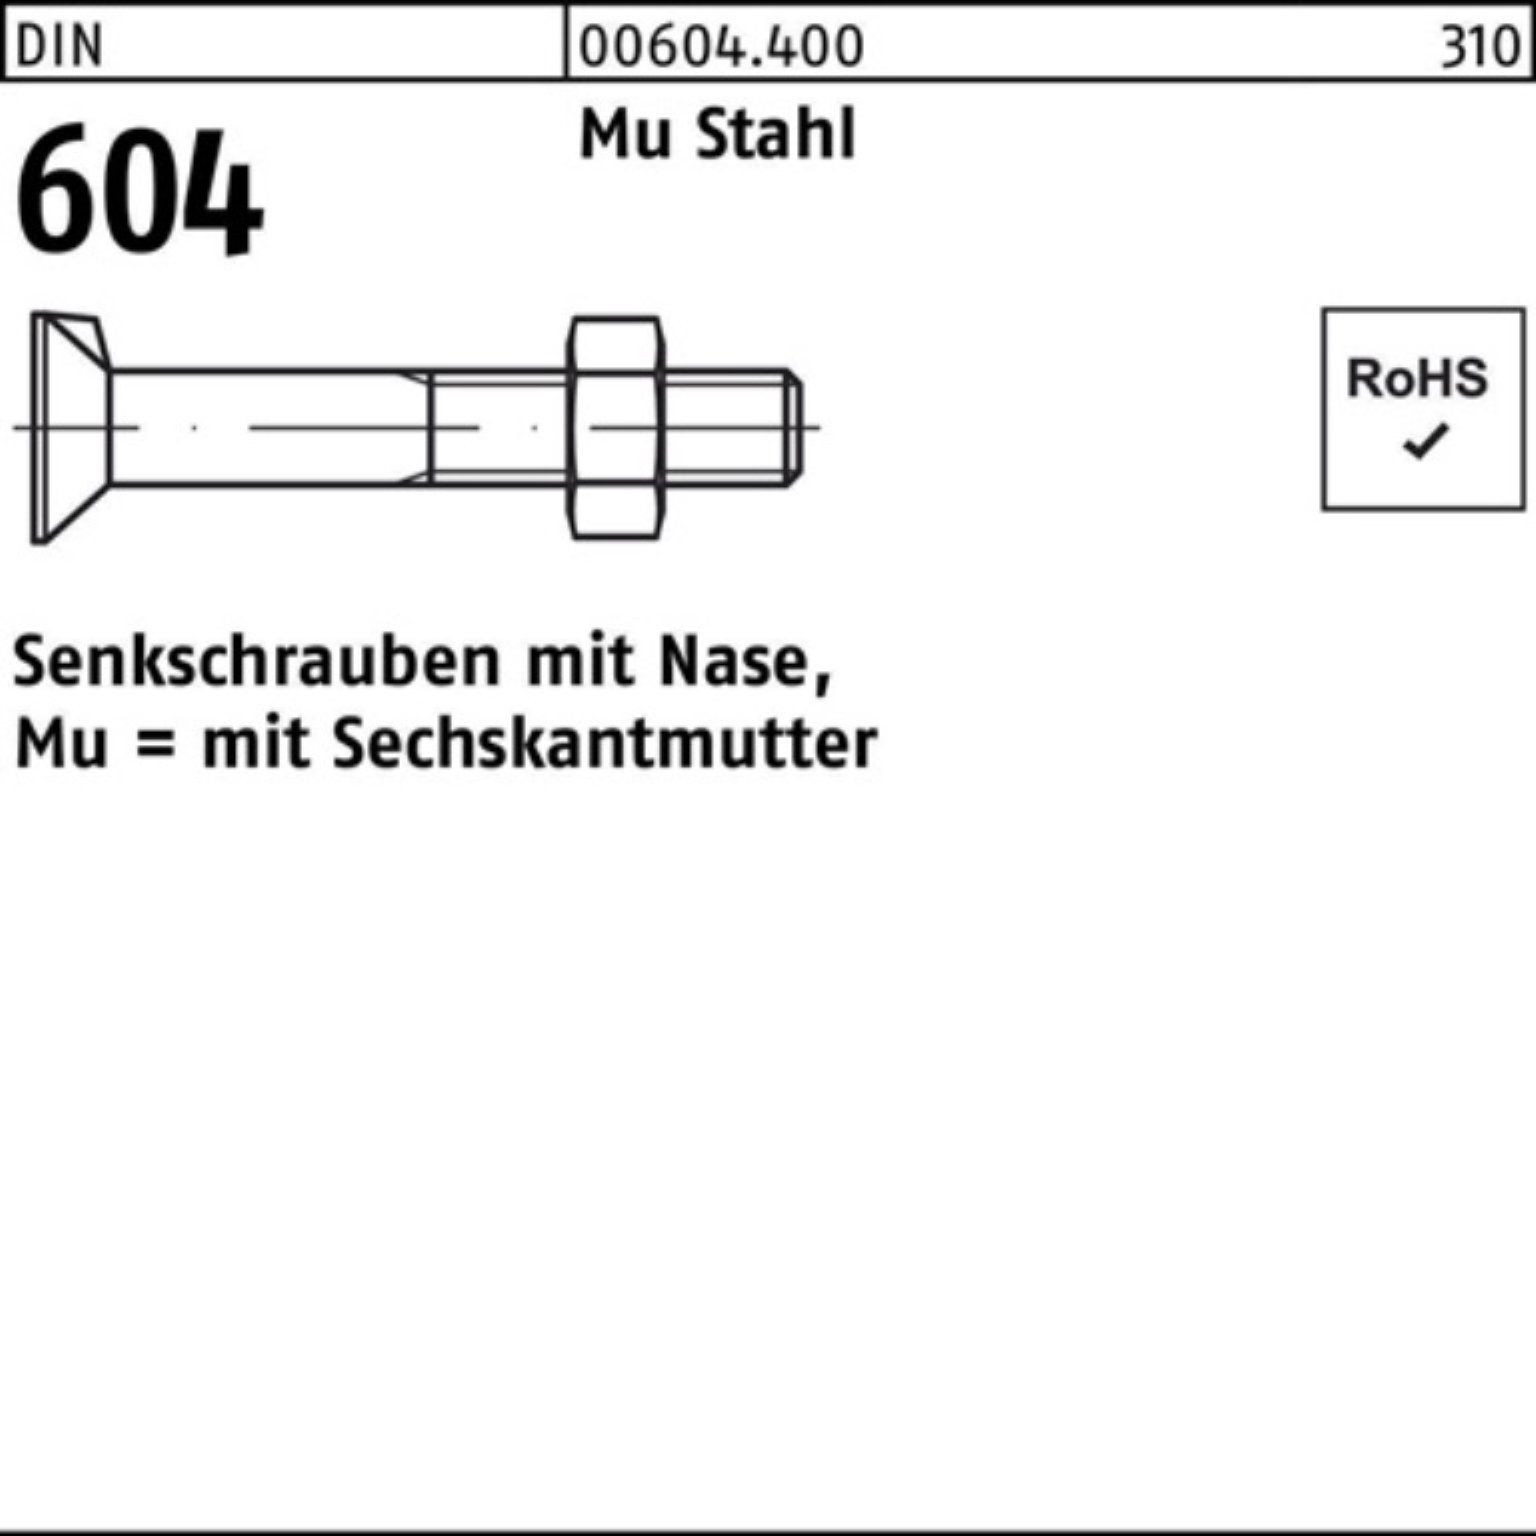 Reyher Senkschraube 100er Pack Senkschraube DIN 604 Nase/6-ktmutter M16x 45 Mu Stahl 4.6 5